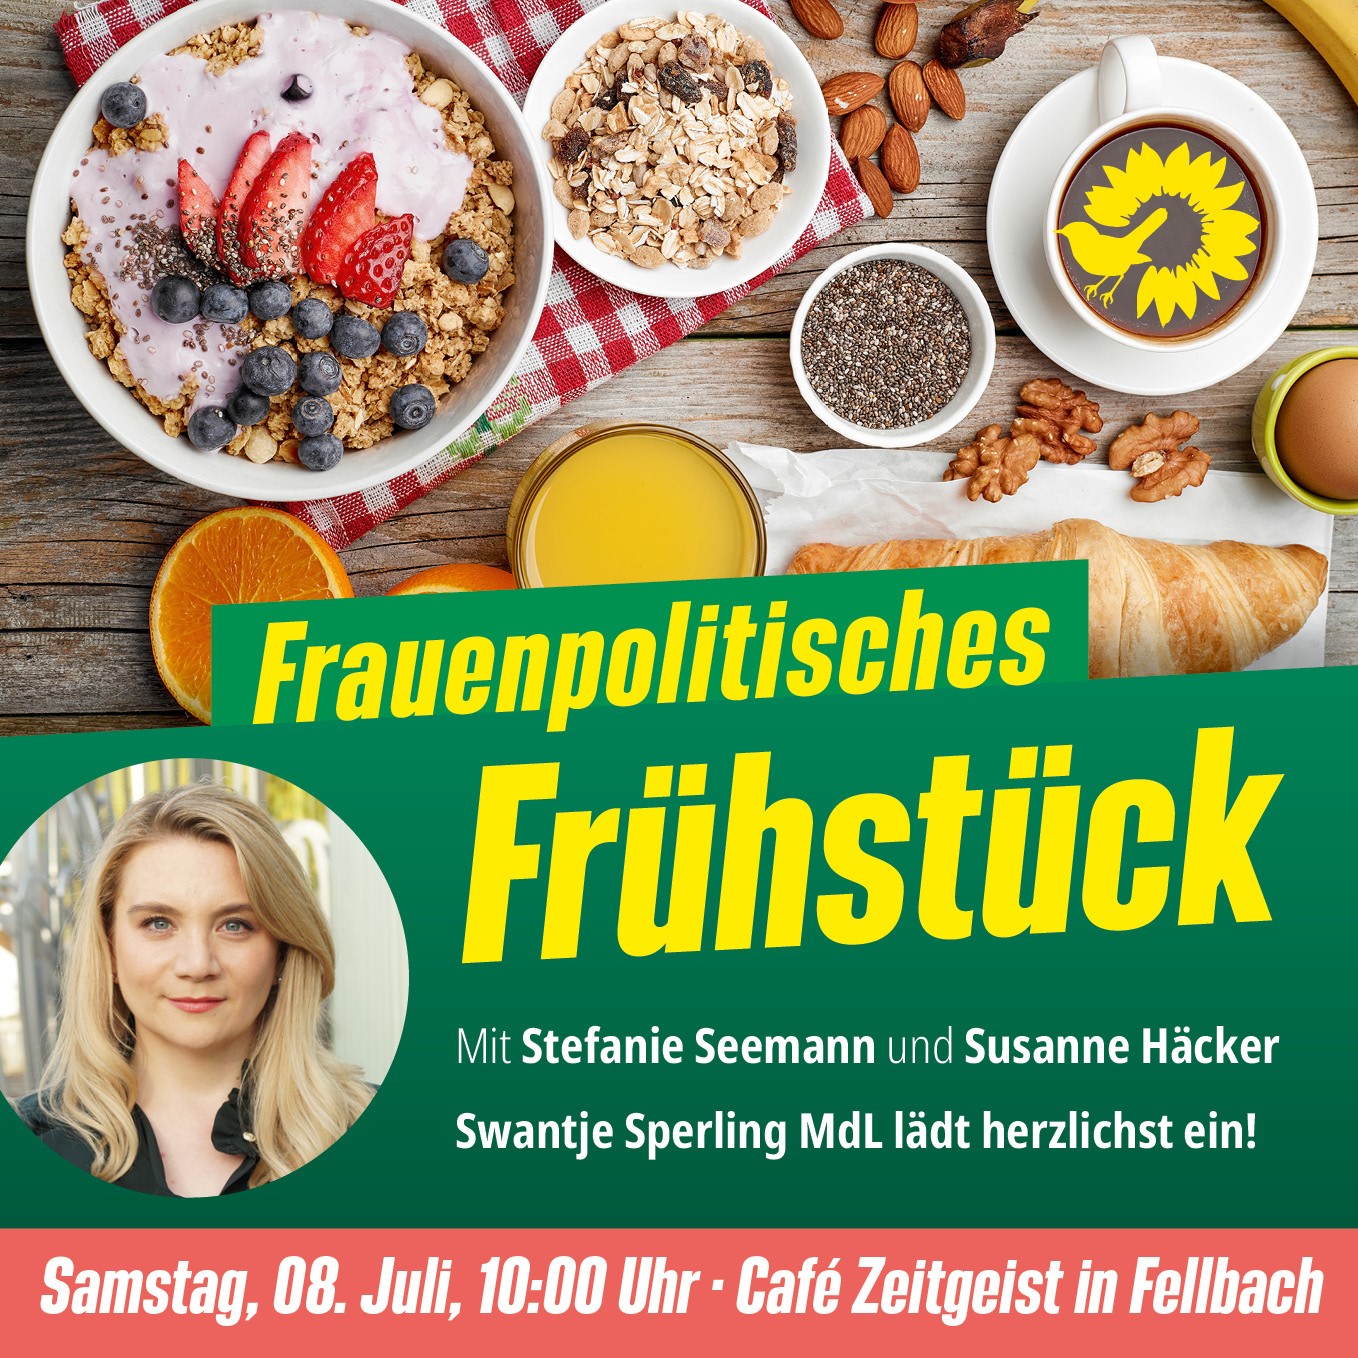 Frauenpolitisches Frühstück mit Stefanie Seemann & Susanne Häcker